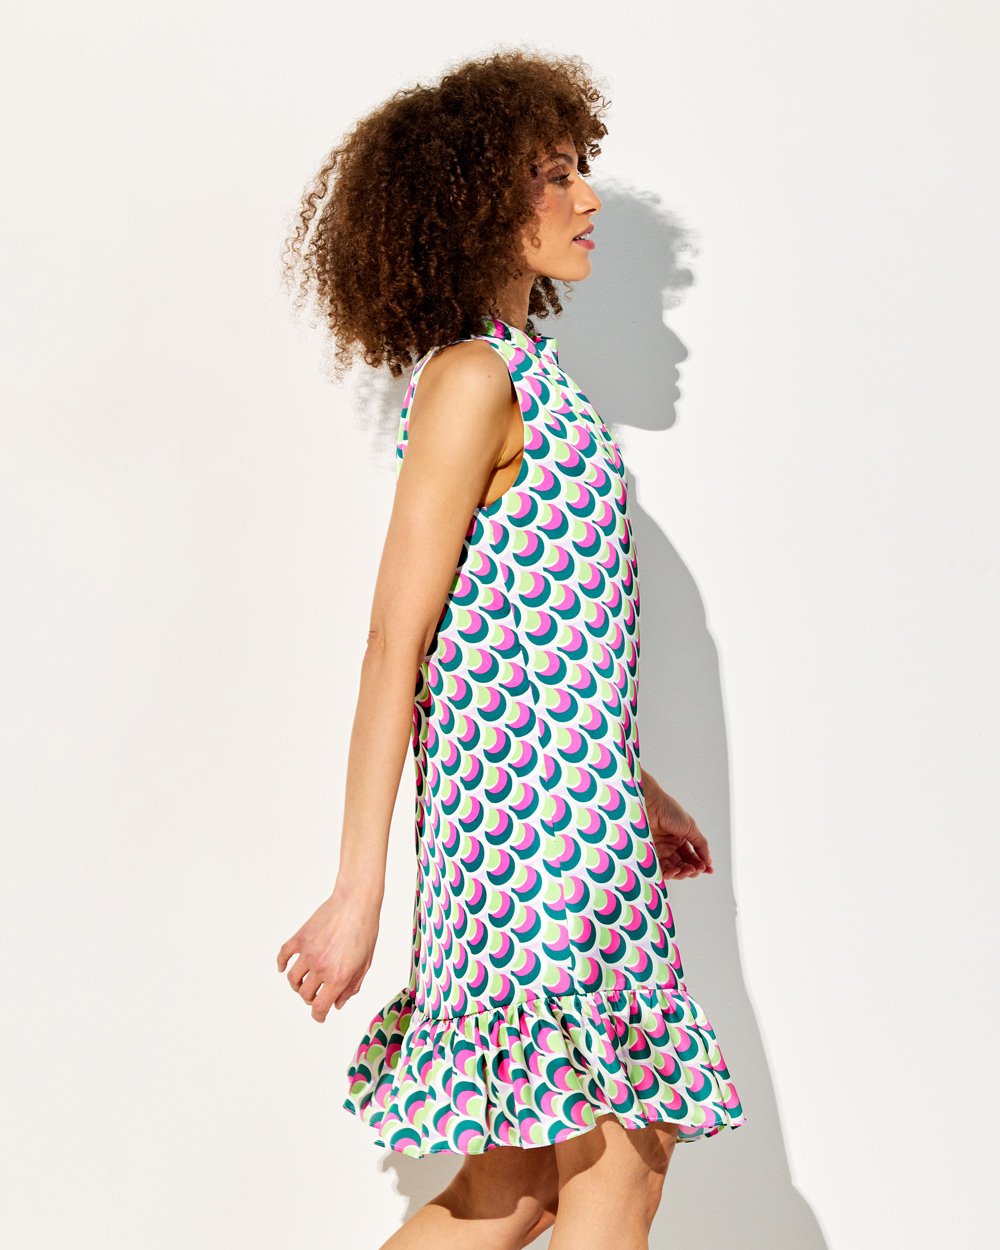 Φόρεμα σε γεωμετρικό print με βολάν στο τελείωμα